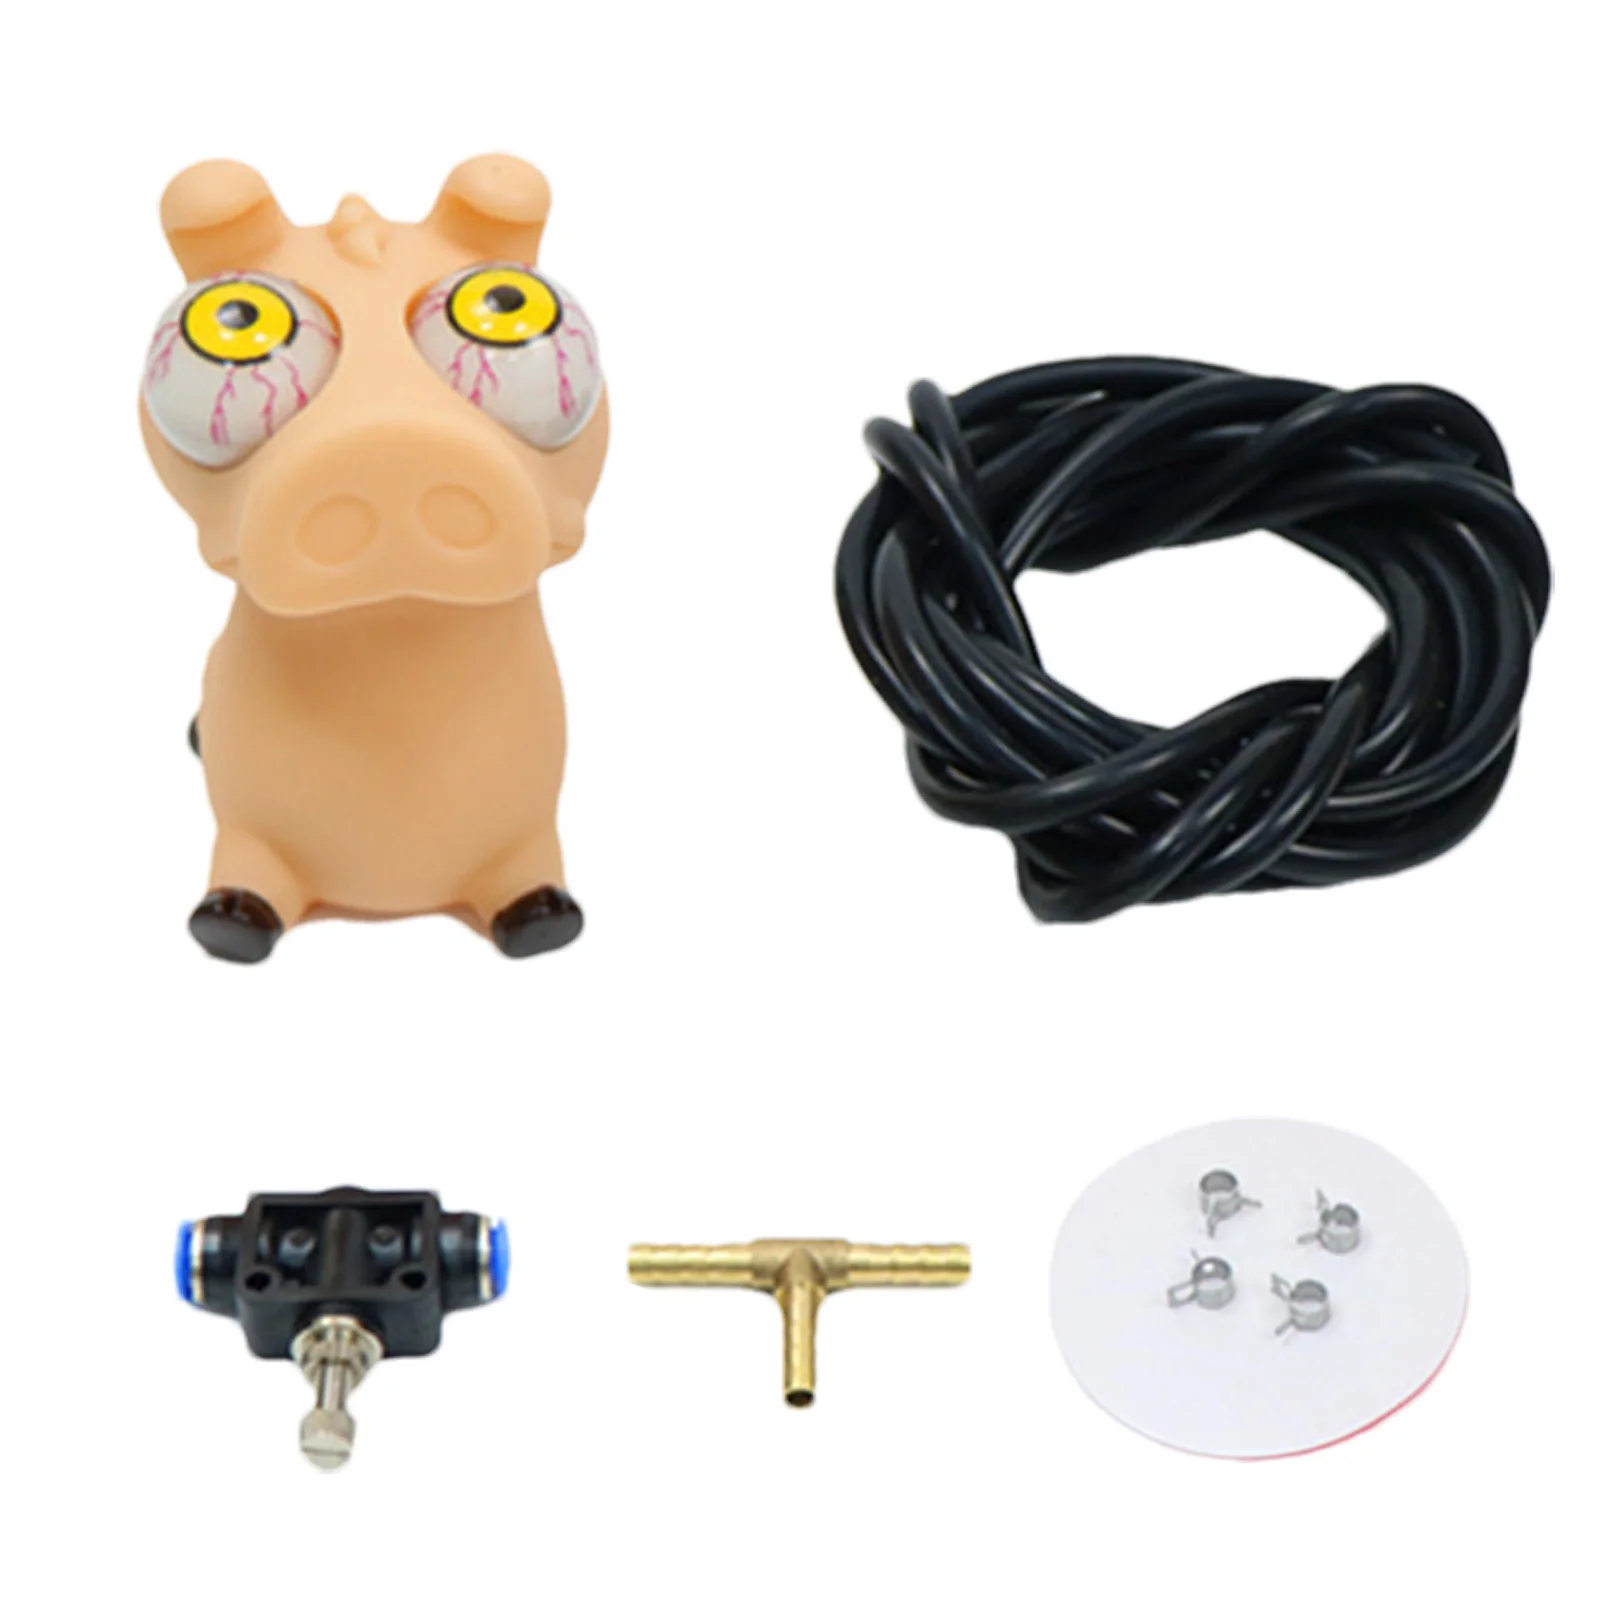 Coche de juguete de ojo explosivo Turbo, juguete de zombis, descomprime adornos y ojos grandes, regalo de cumpleaños